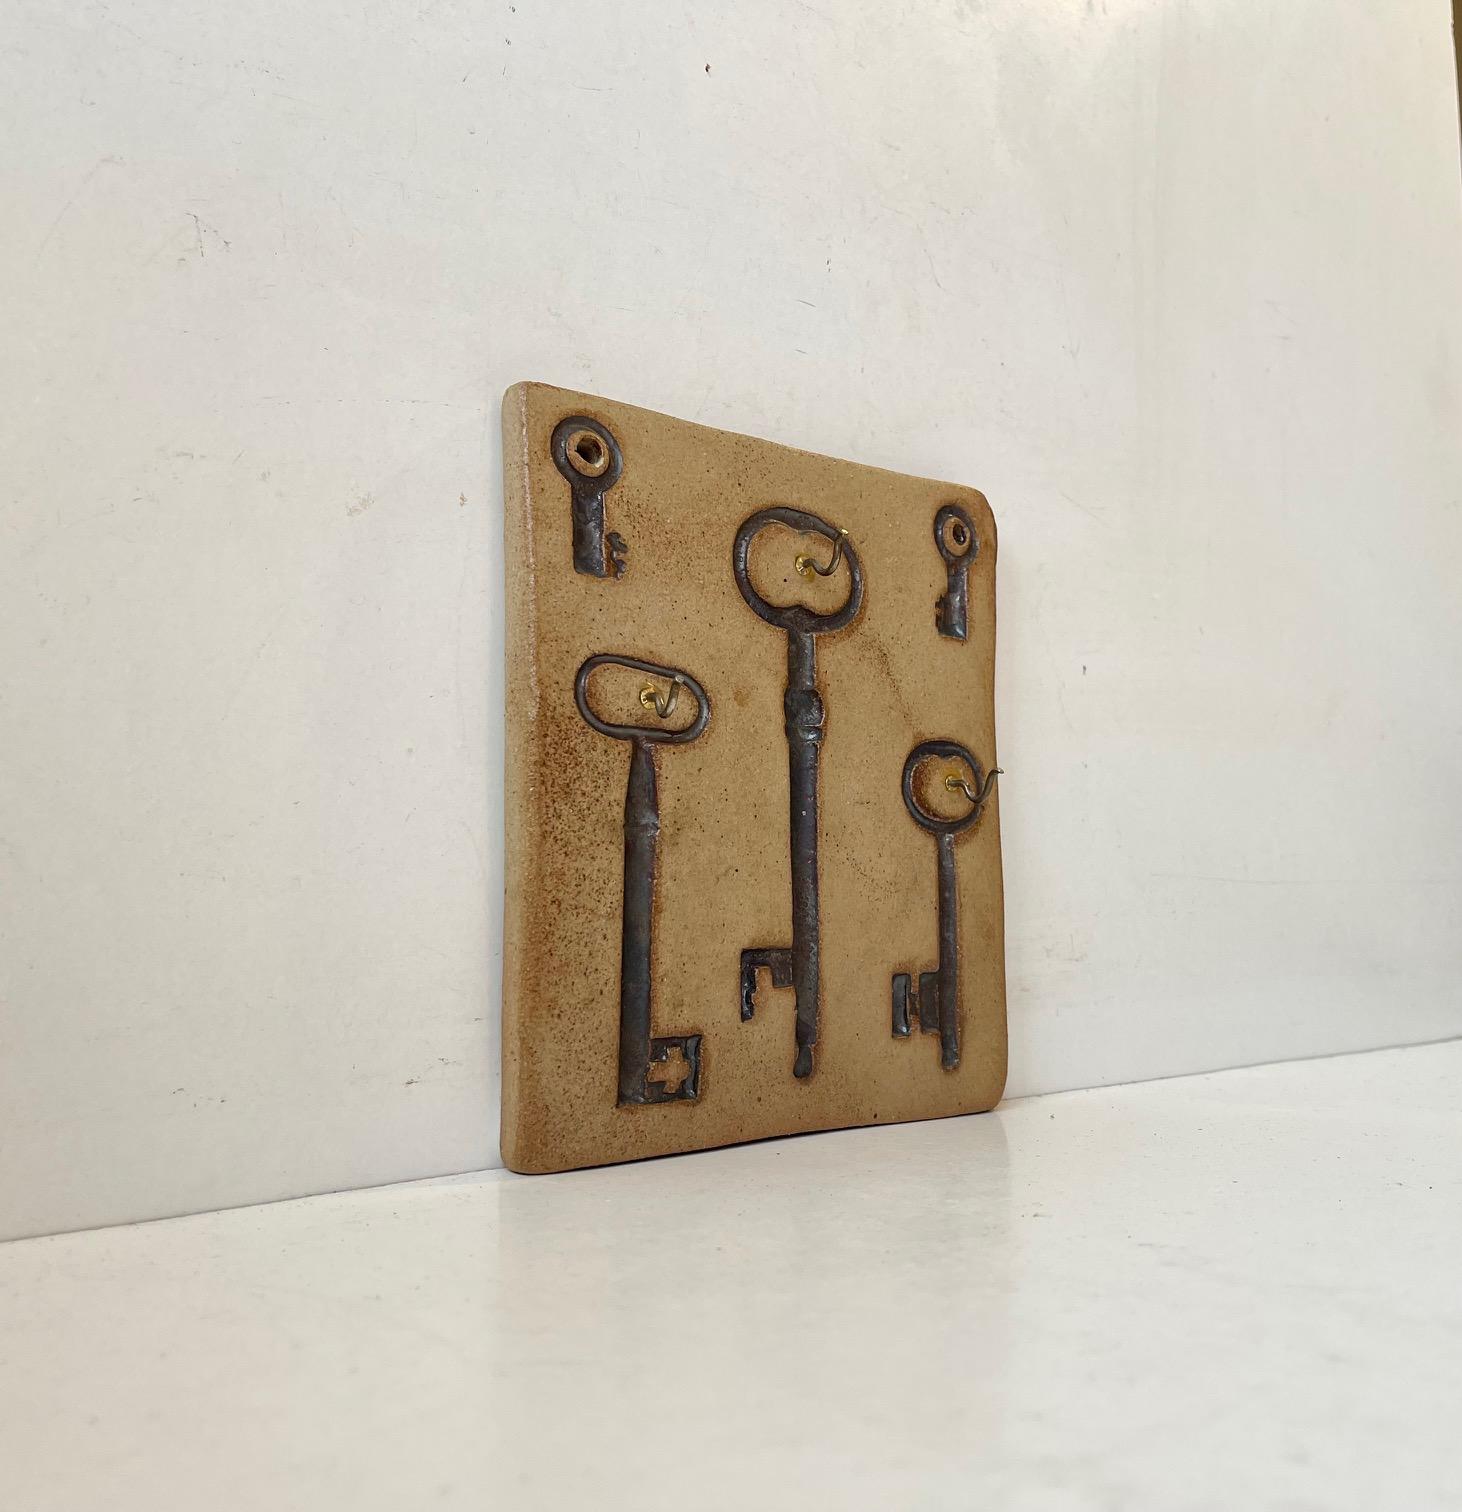 Ungewöhnlicher Schlüsselhalter aus Steingut für die Wandmontage. Verziert mit Abdrücken von verschiedenen Schlüsseln. Entworfen und hergestellt von Ulla Lønow in Dänemark, um 1970. Abmessungen: 16,5 x 15 x 1,5 cm.